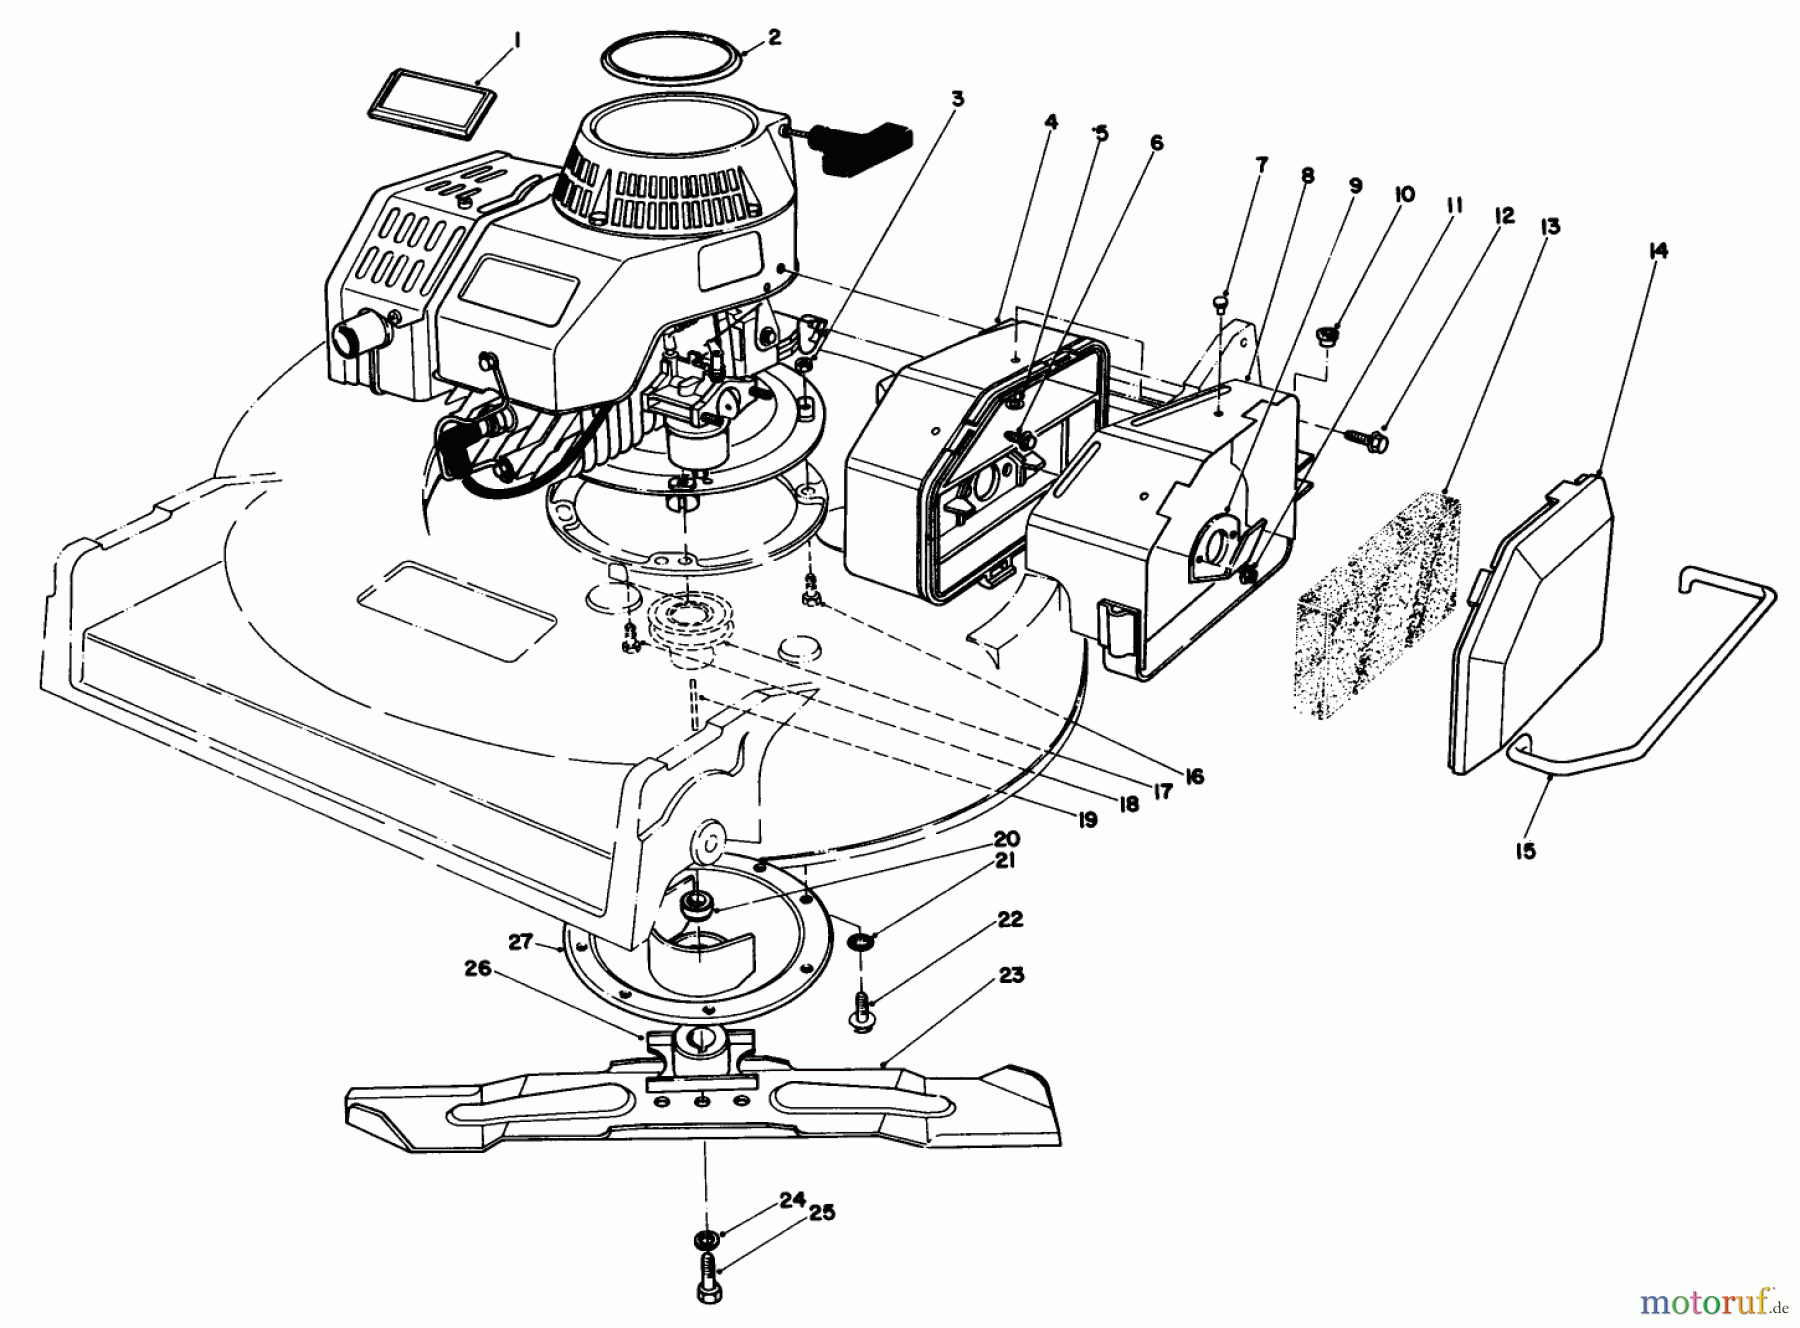  Toro Neu Mowers, Walk-Behind Seite 2 22035 - Toro Lawnmower, 1985 (5000001-5999999) ENGINE ASSEMBLY (MODEL 22035)